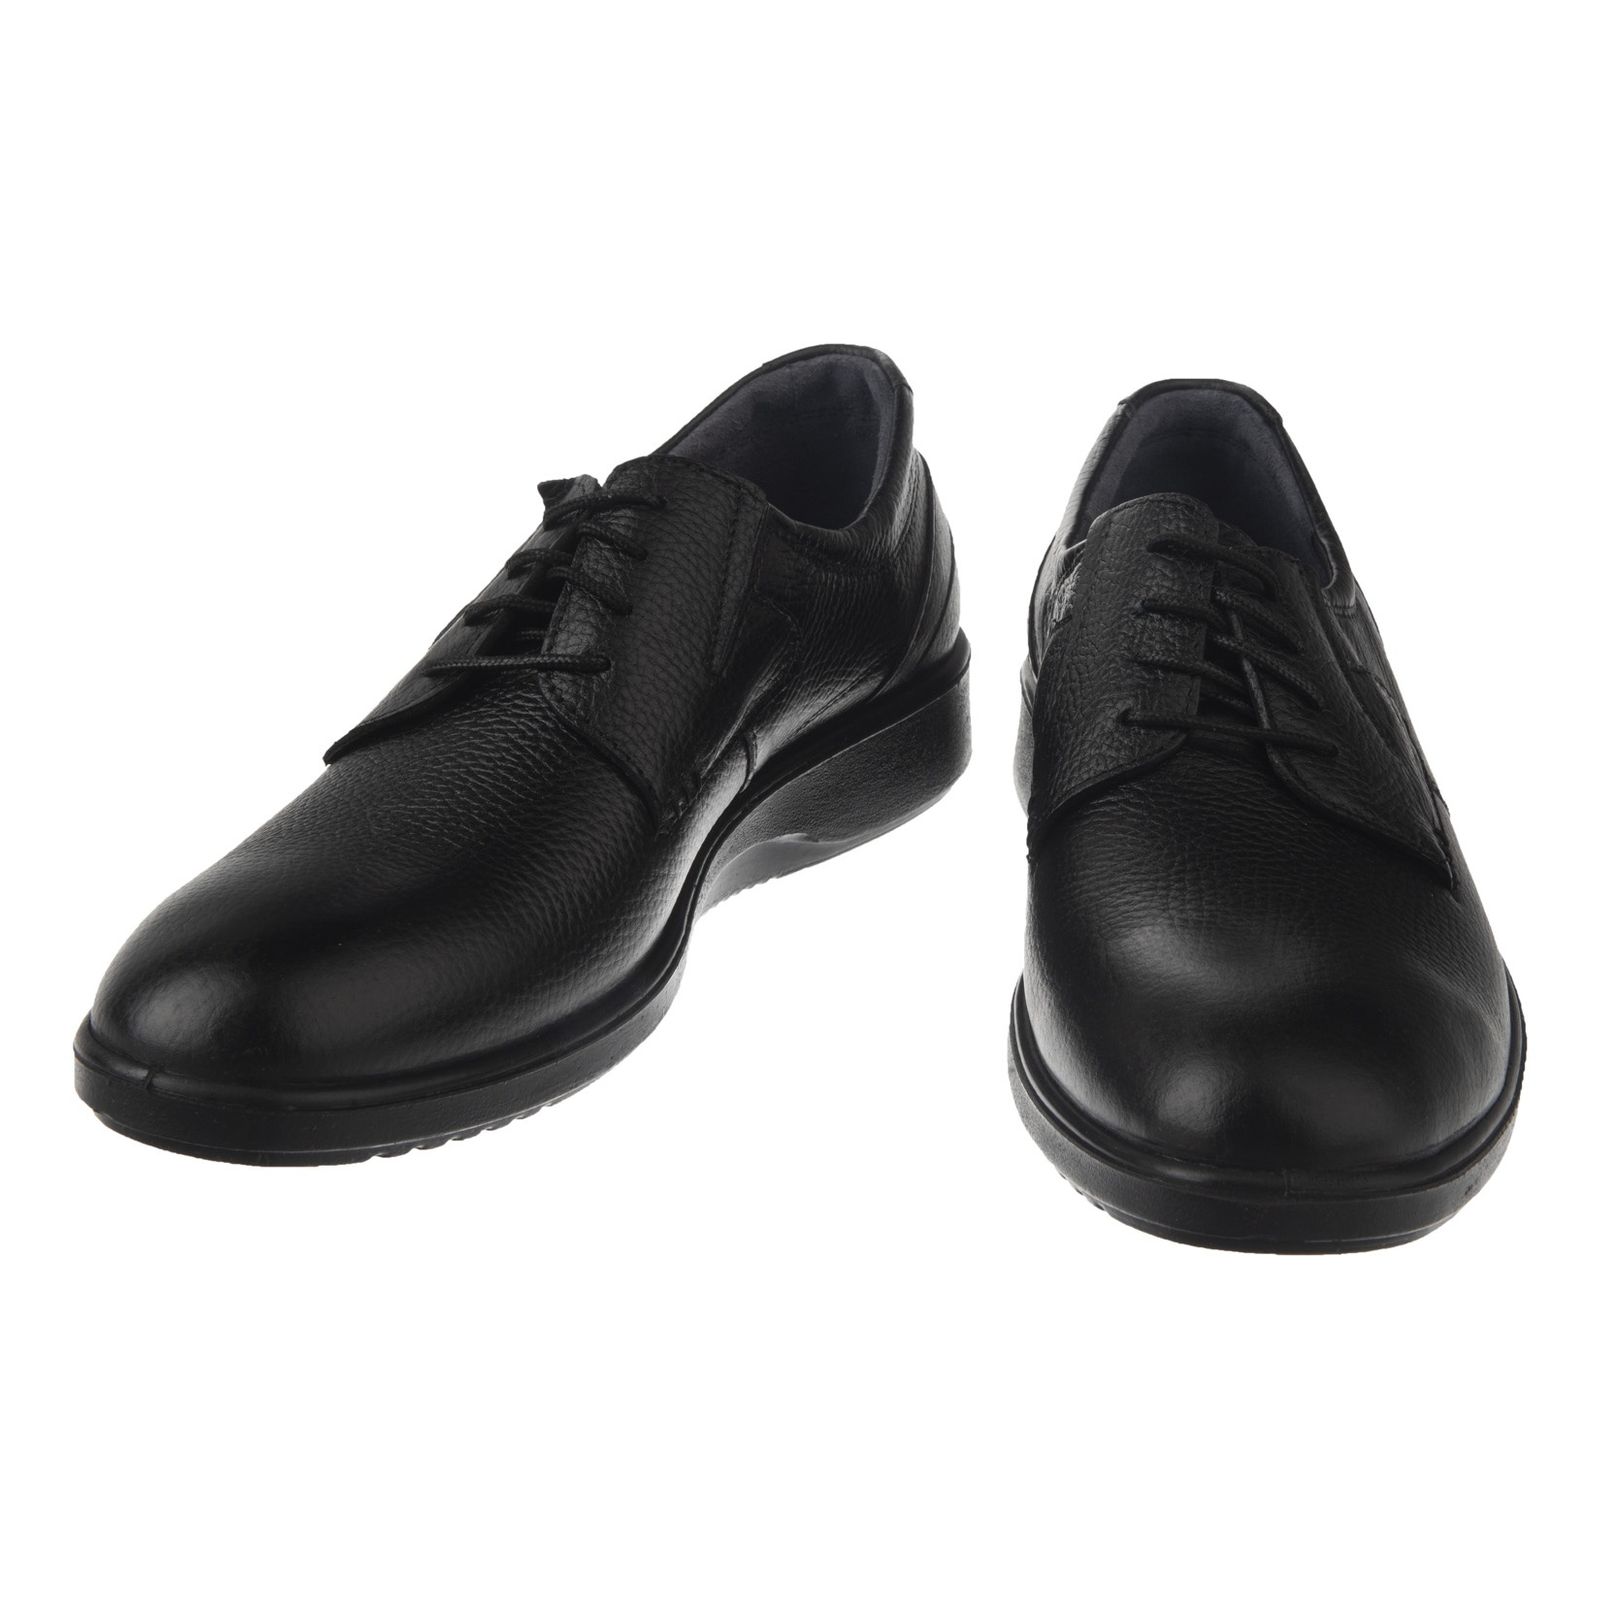 کفش روزمره مردانه شیفر مدل 7216B-101 - مشکی - 6